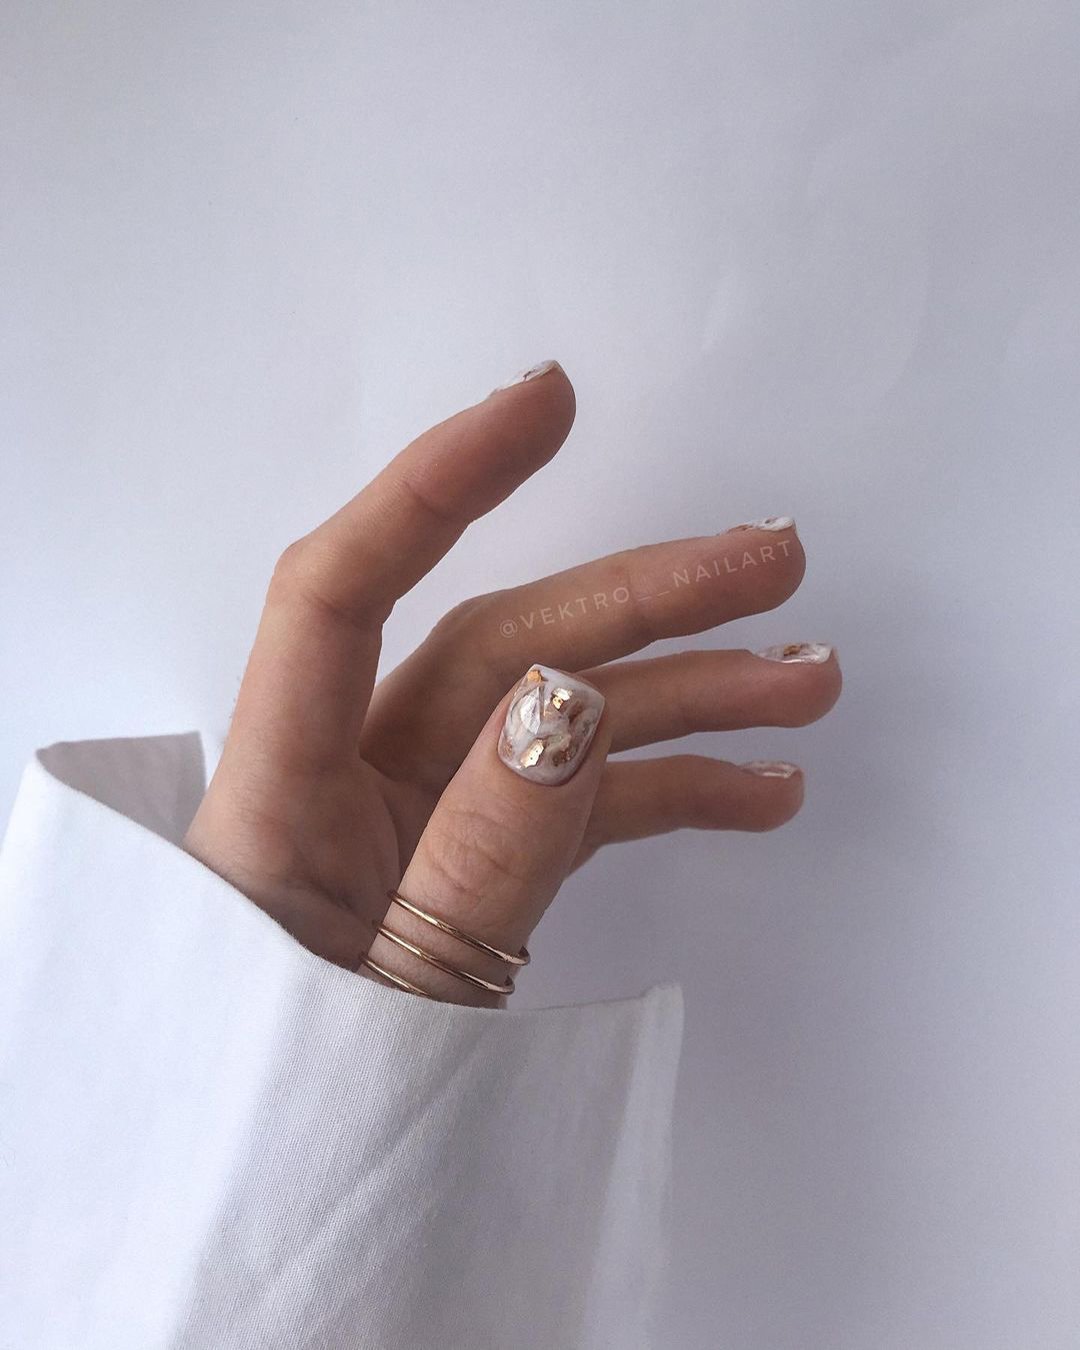 nail design wedding ideas nude white gold simple vektro__nailart